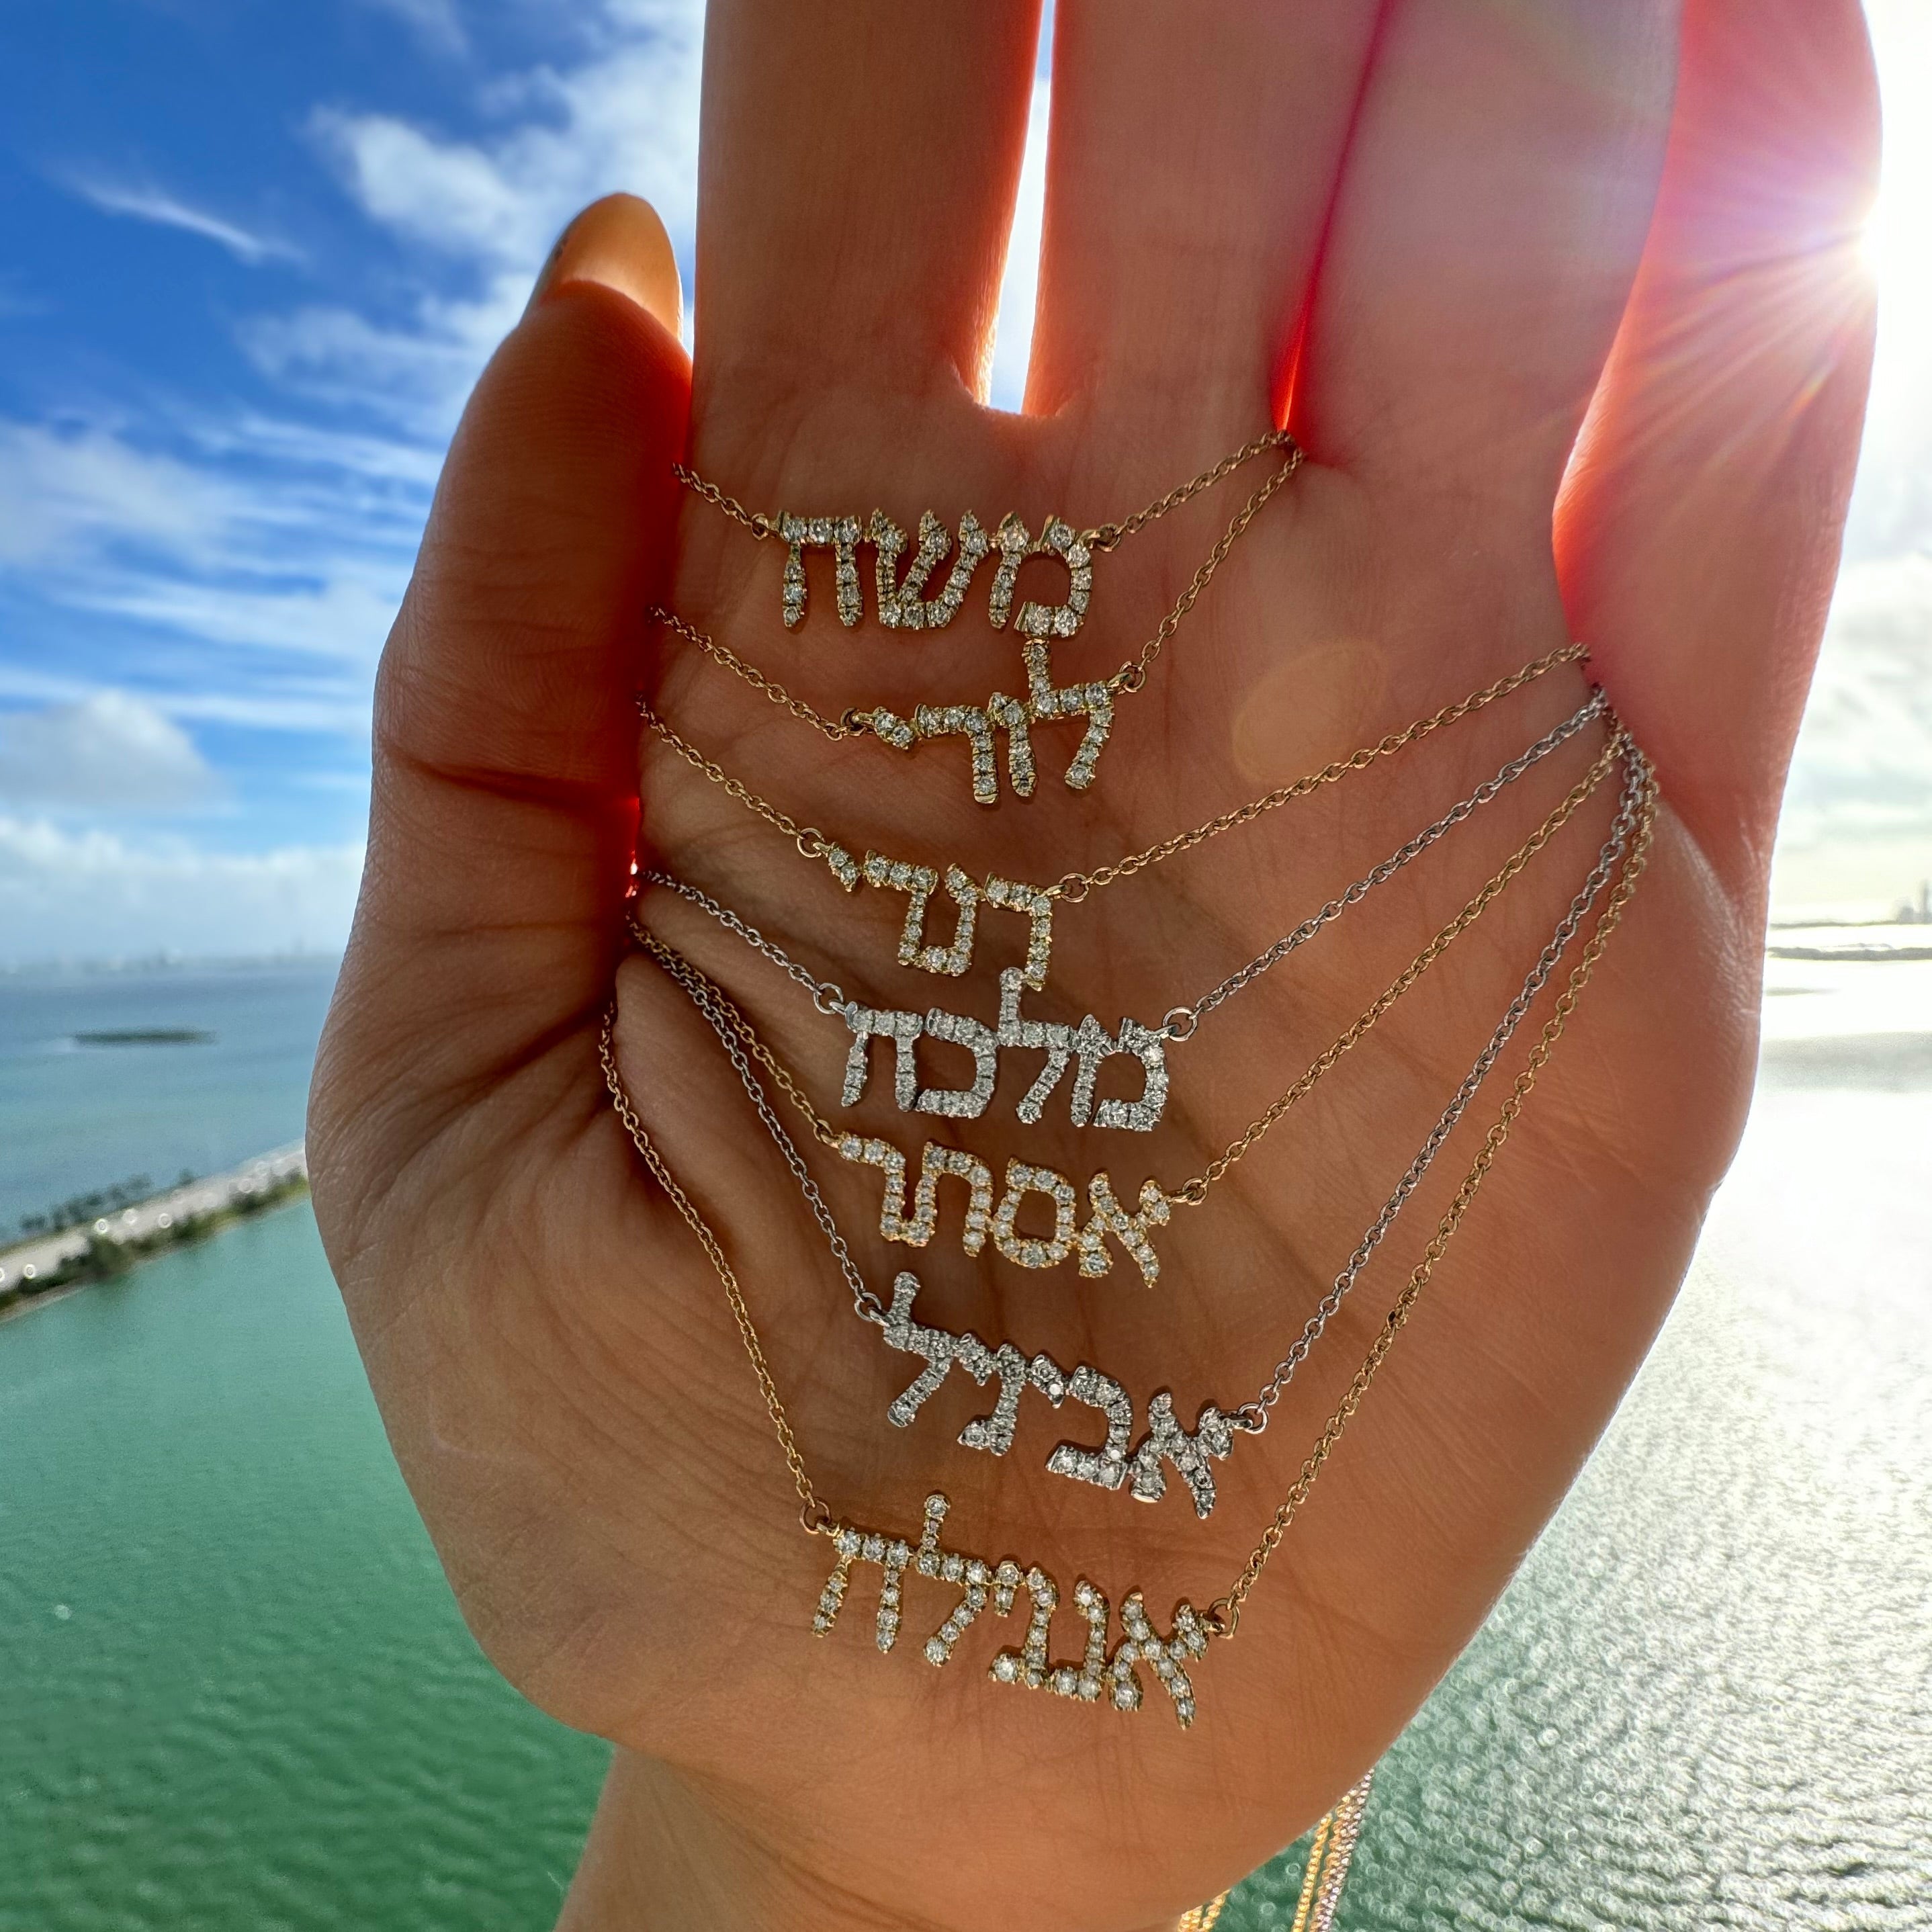 14K Gold Personalized Hebrew Diamond Nameplate Necklace Necklaces by Izakov Diamonds + Fine Jewelry | Izakov